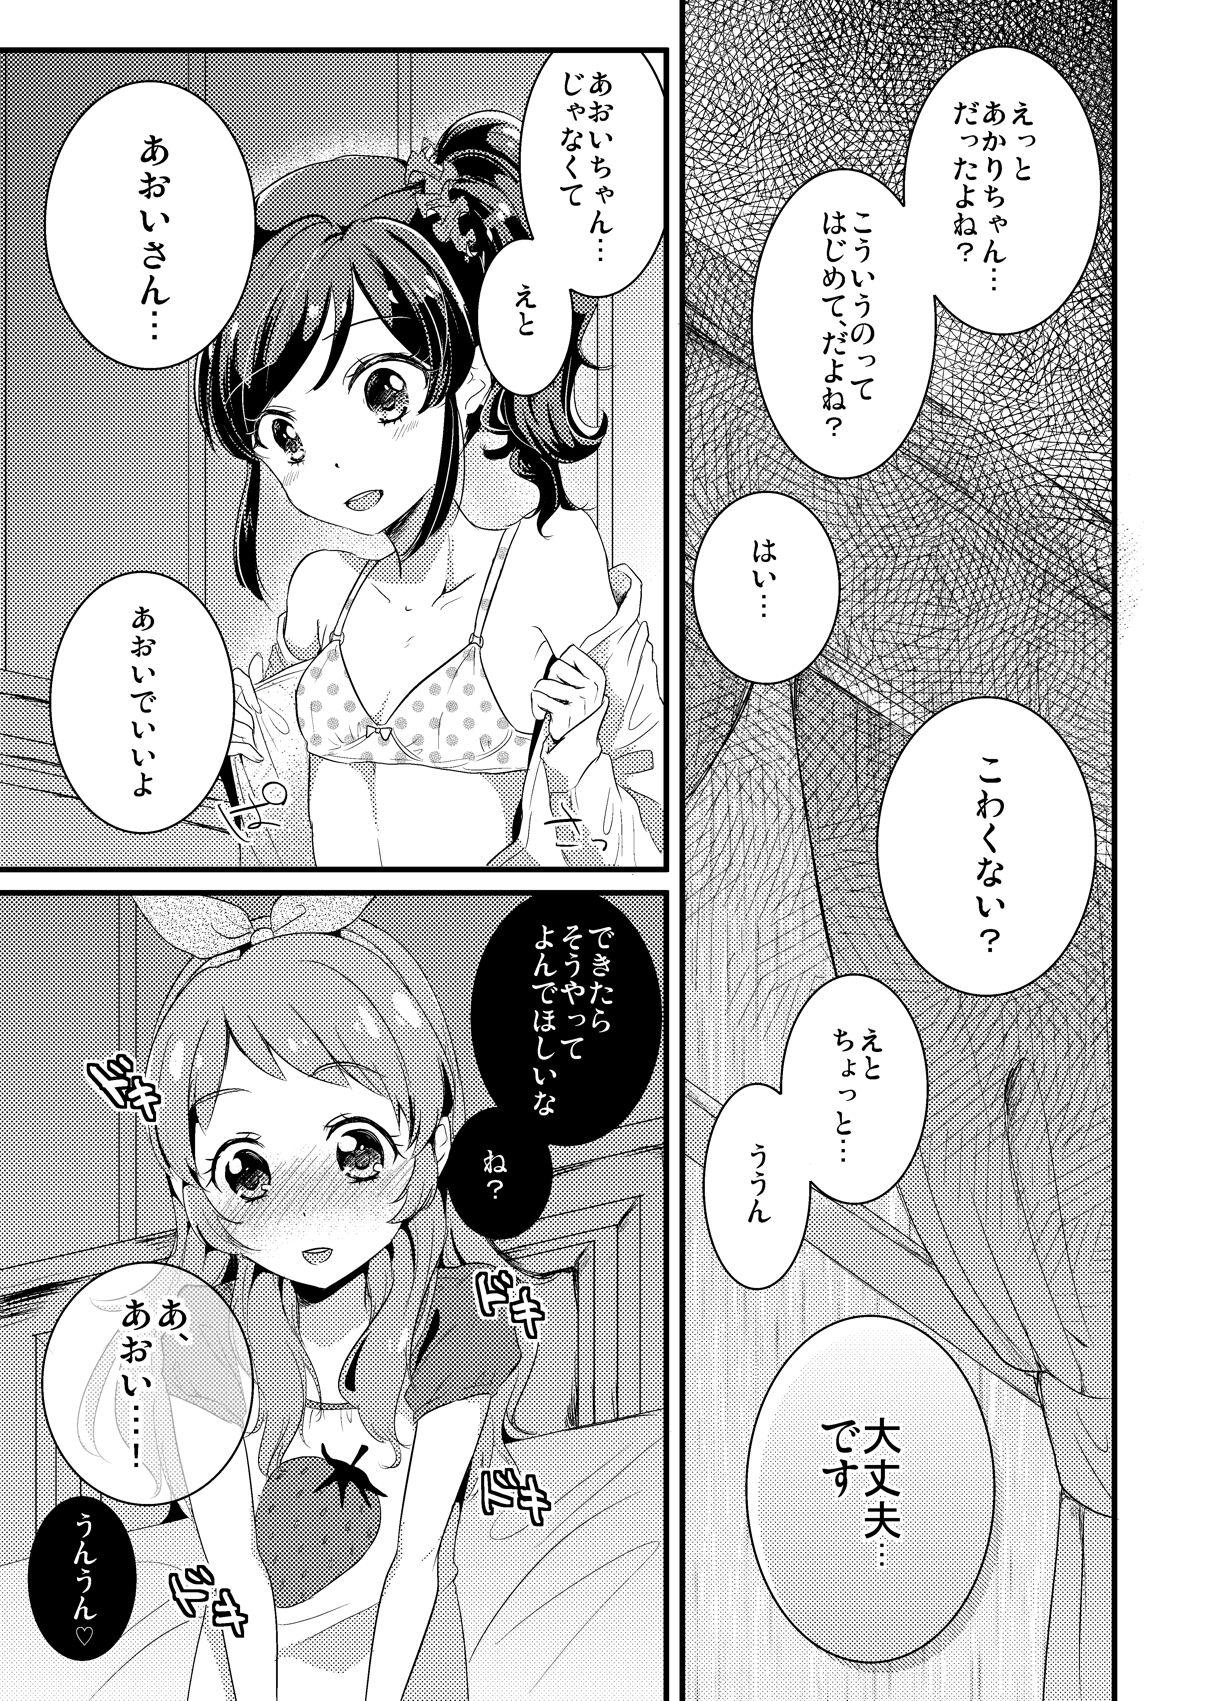 Pissing Akari · Aoi manga Warning does not sound - Aikatsu Parody - Picture 1